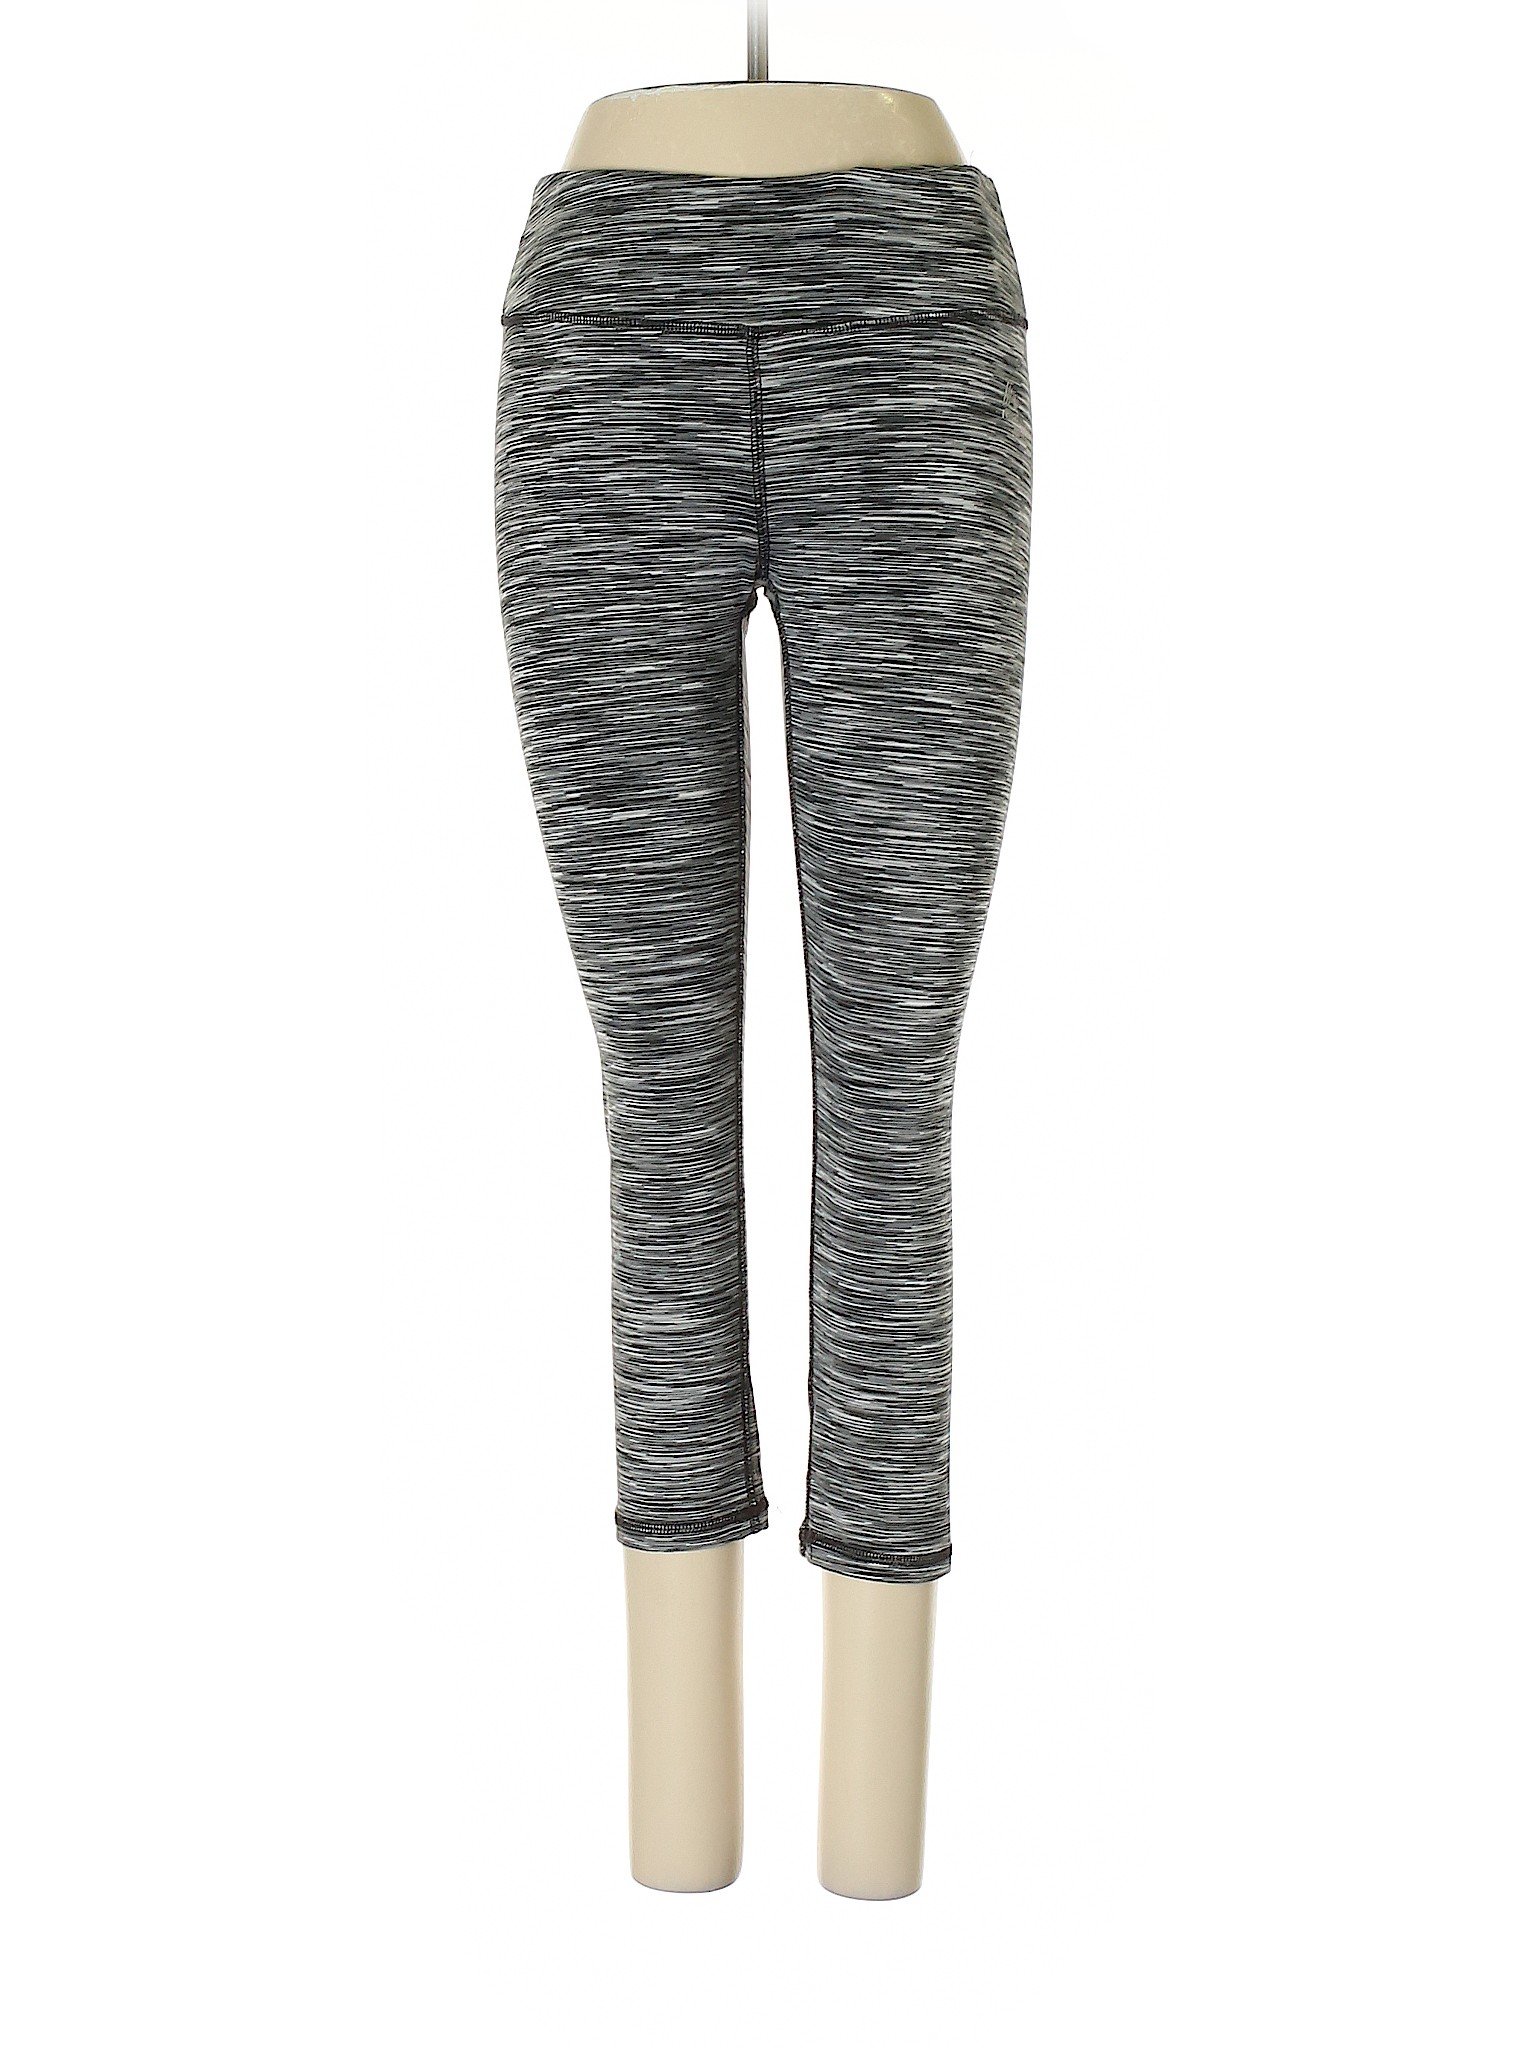 RBX Women Gray Active Pants S | eBay